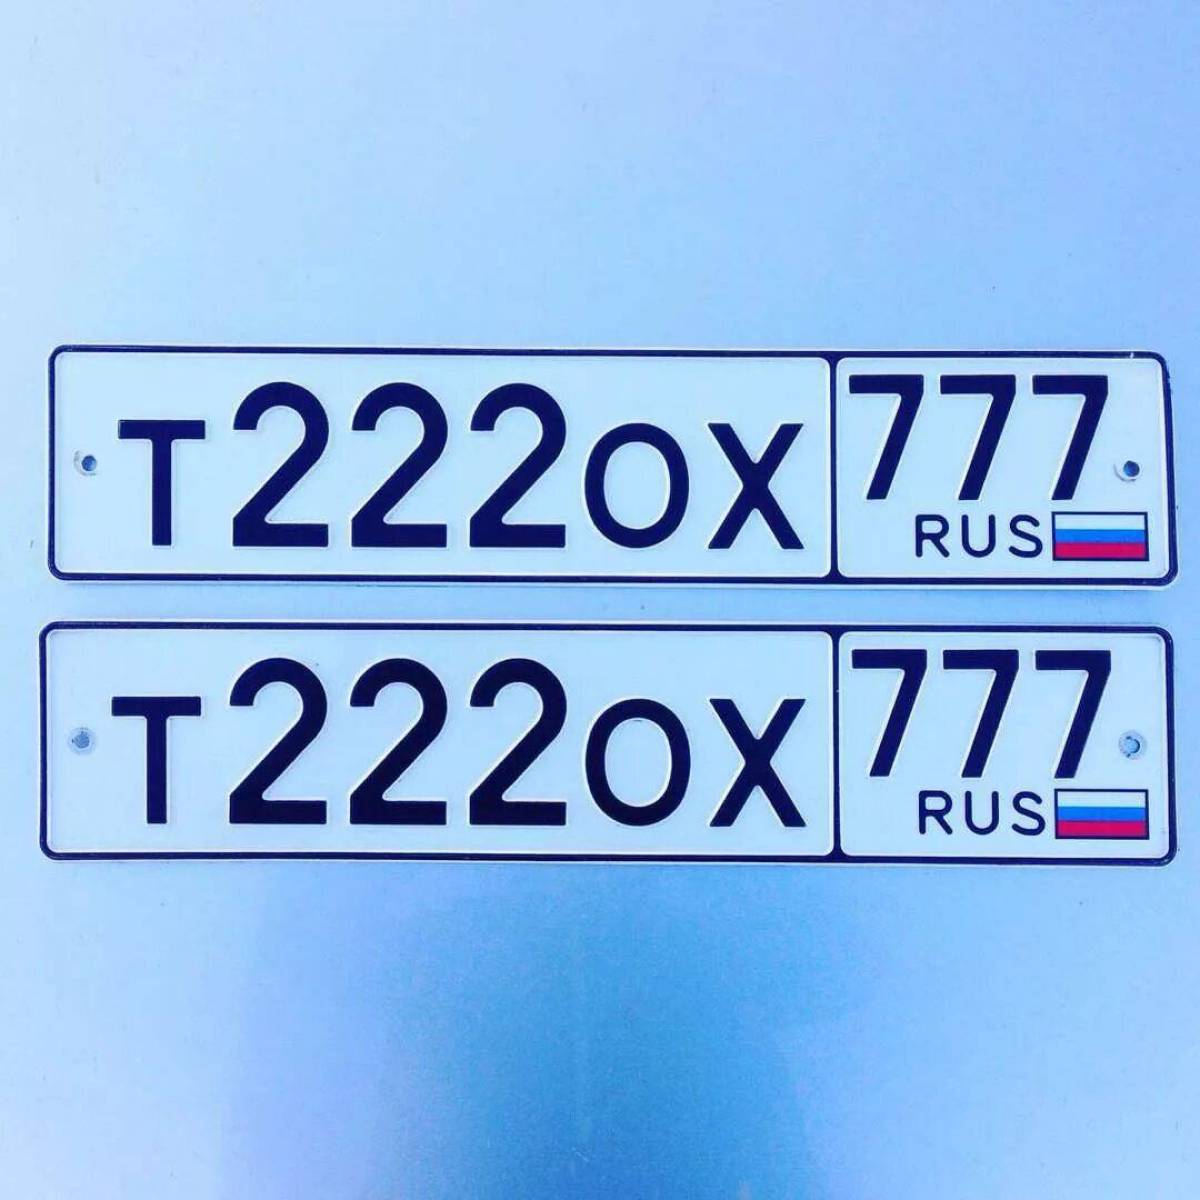 Гос номер автомобиля московская область. Номера машин. Автомобильный номерной знак. Гос номер авто. Гос номерной знак автомобиля.